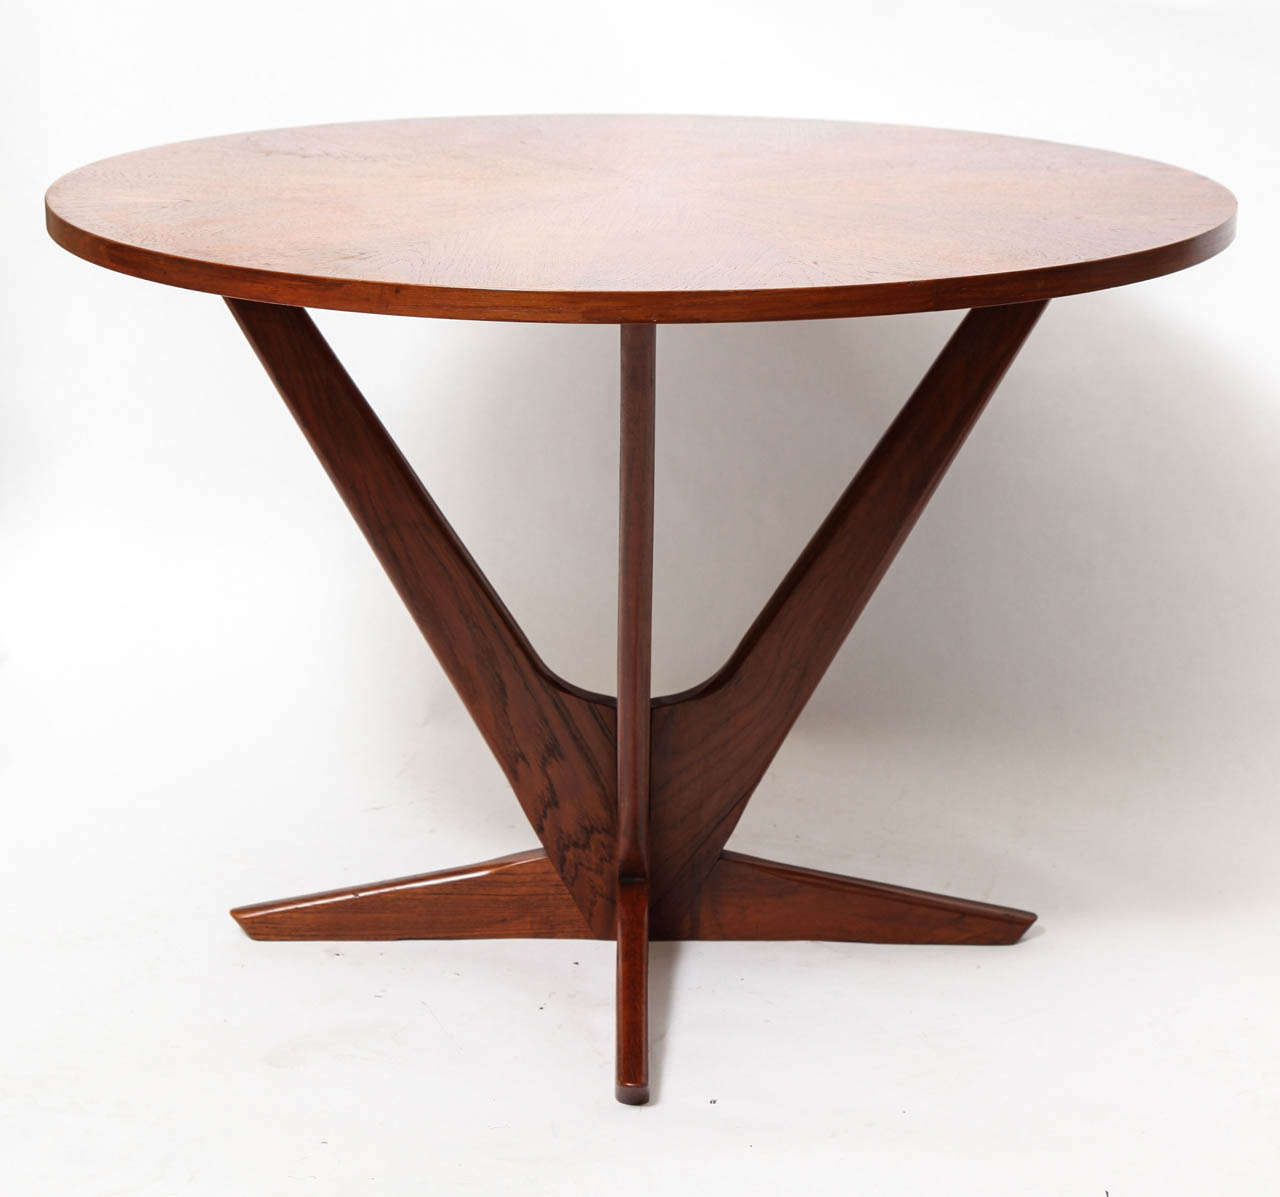 A 1960's Modernist teak Table signed Georg Jensen for Kubus 3